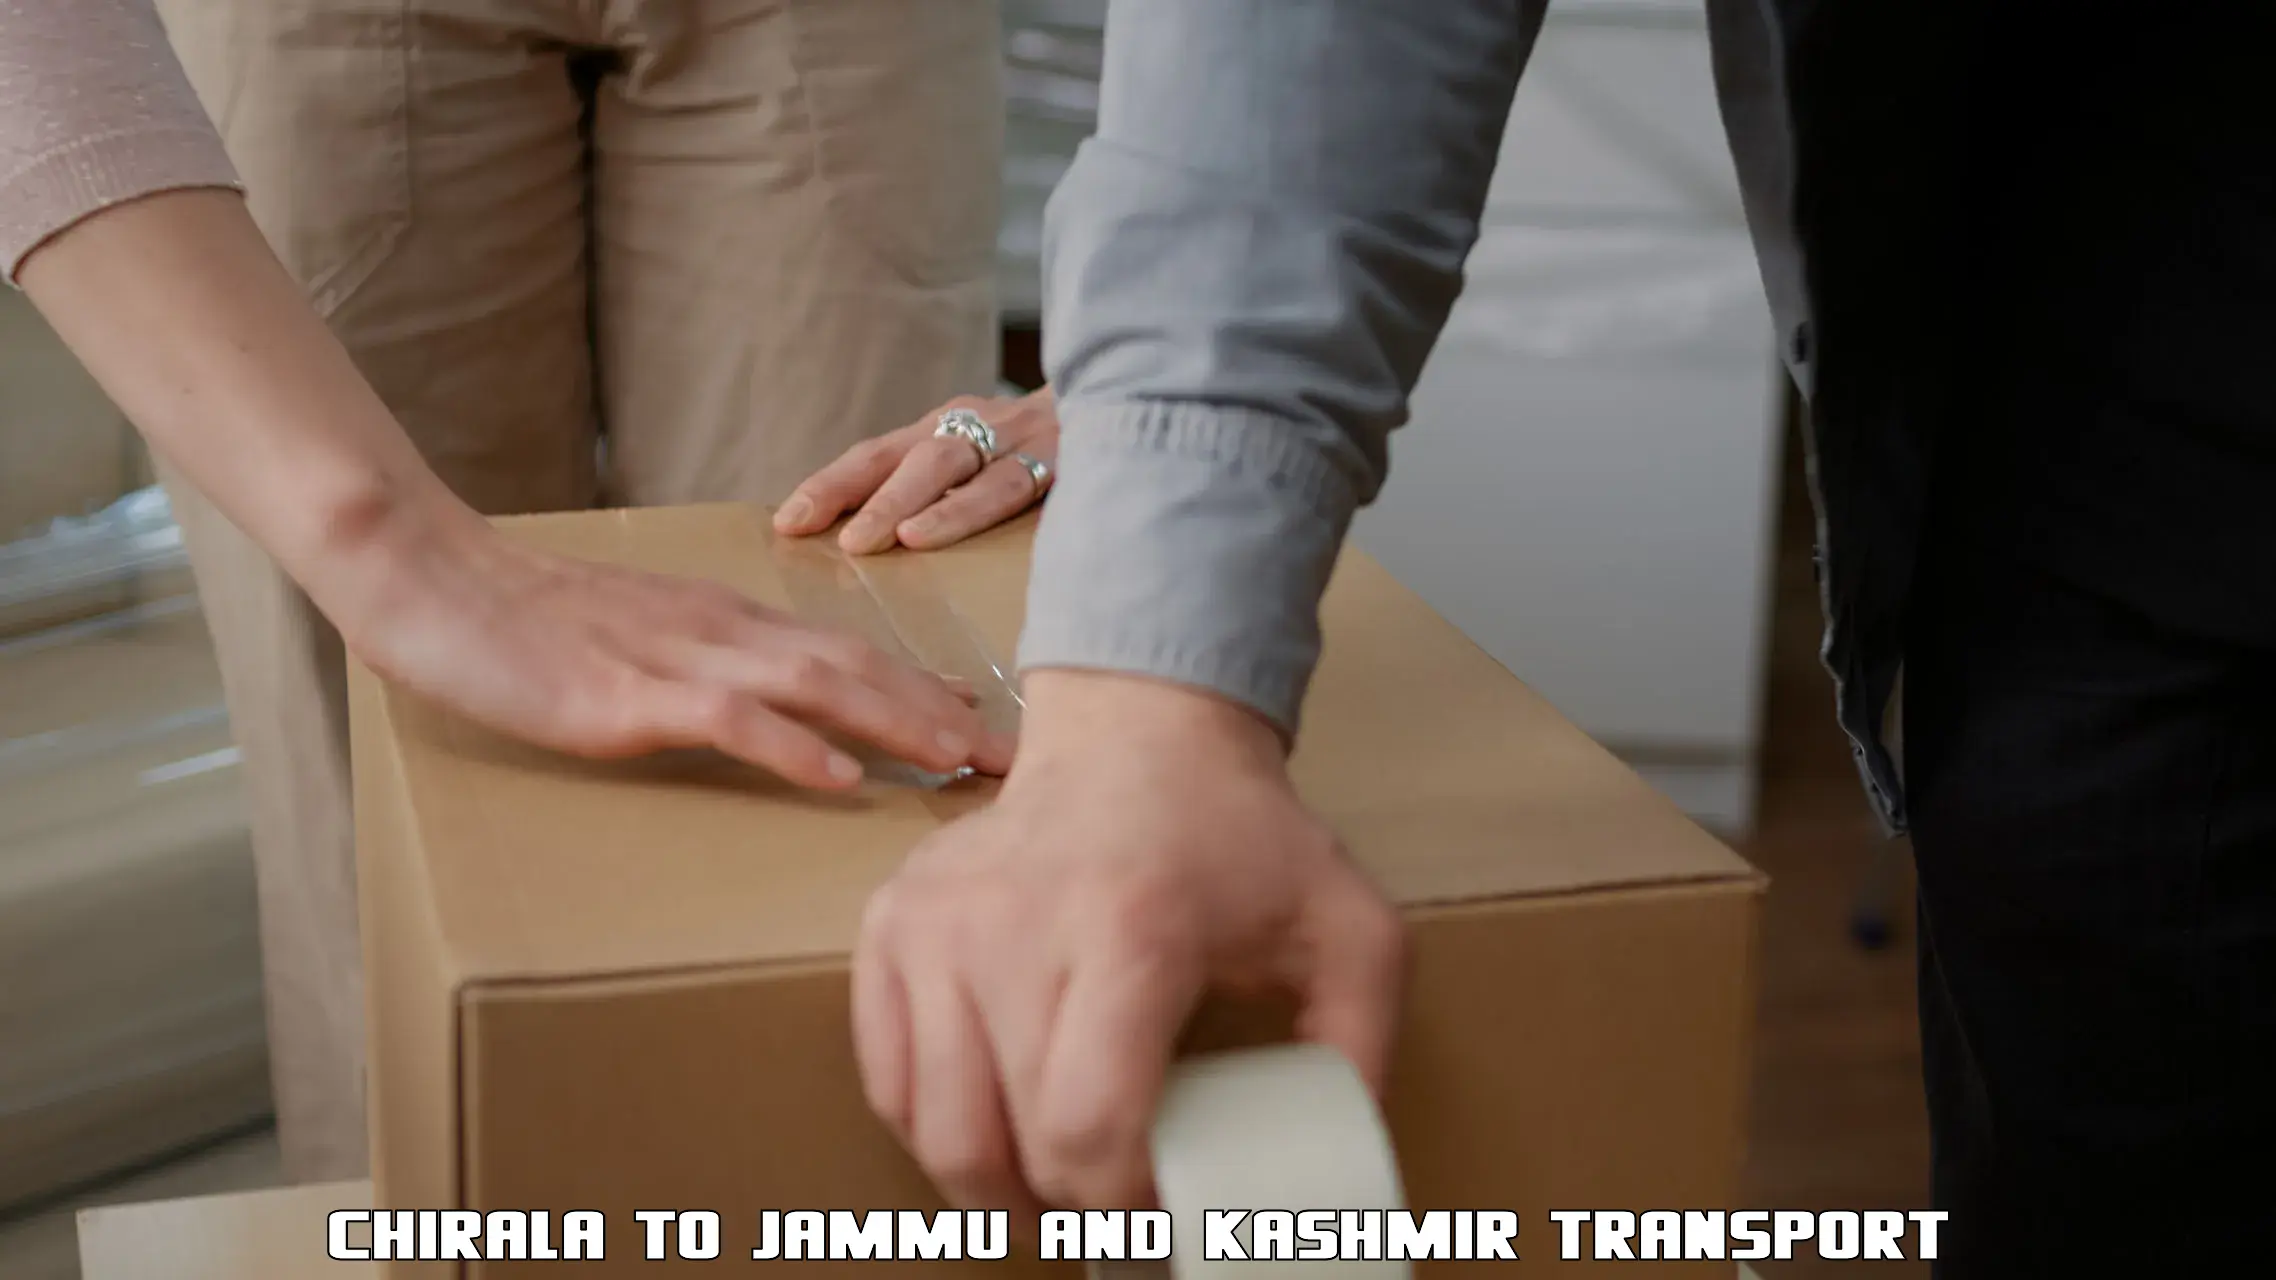 Furniture transport service in Chirala to Jammu